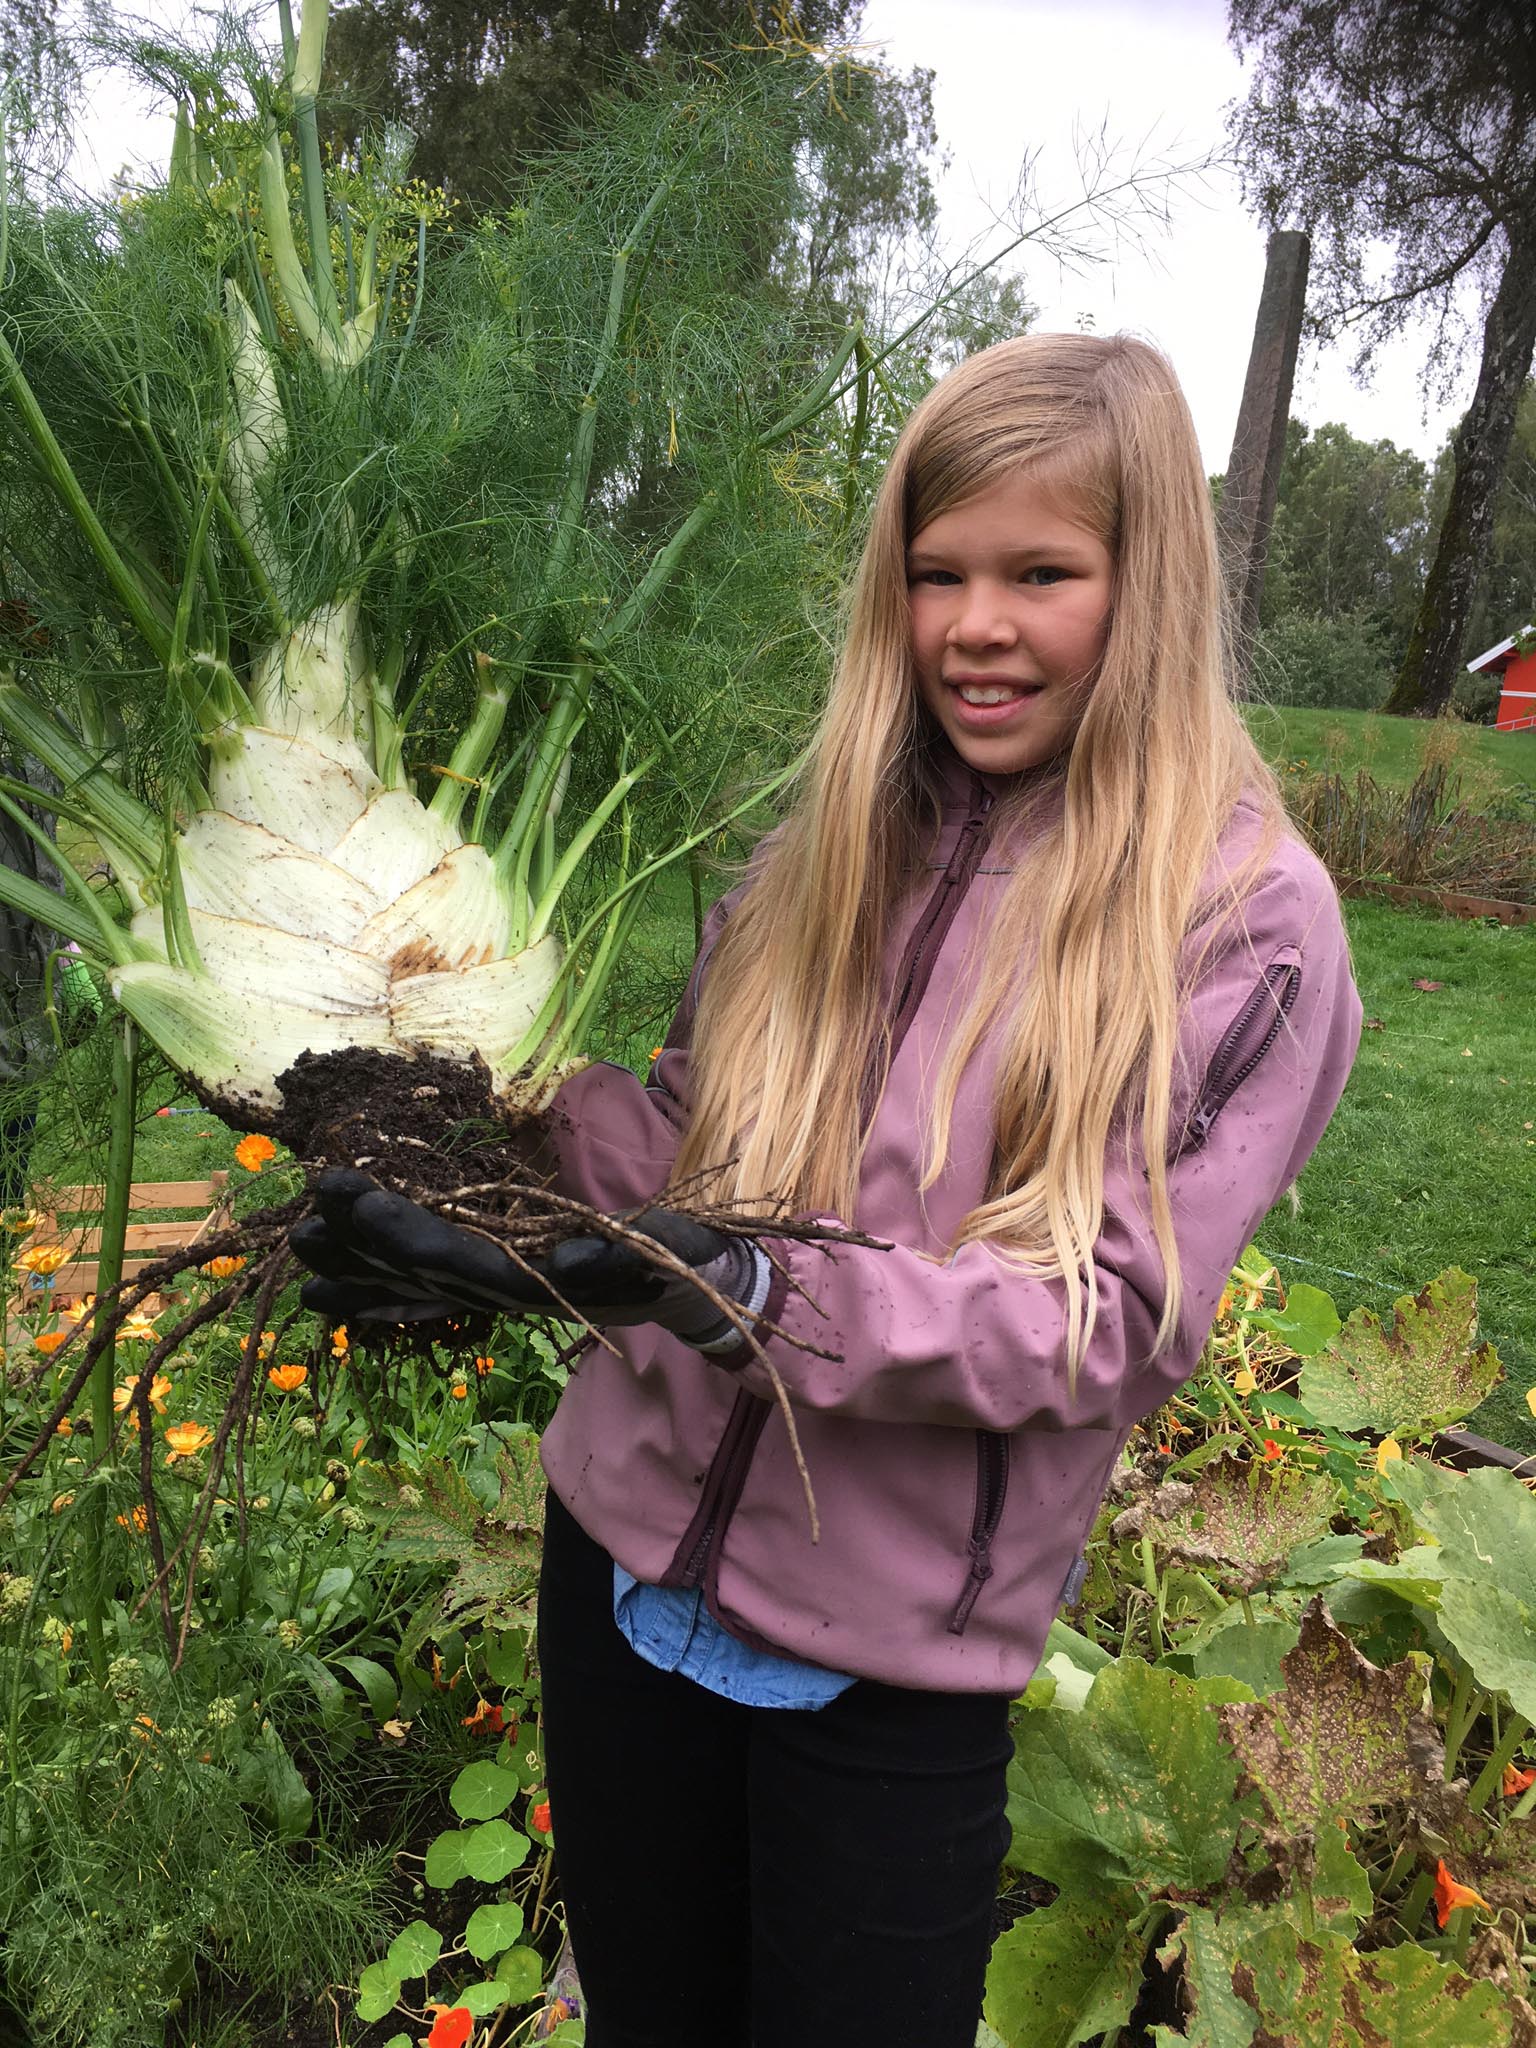 portrett av ung jente med stor fennikel i hendene. Bak skimtes kjøkkenhage og grøntområde. Helt bakerst en bauta